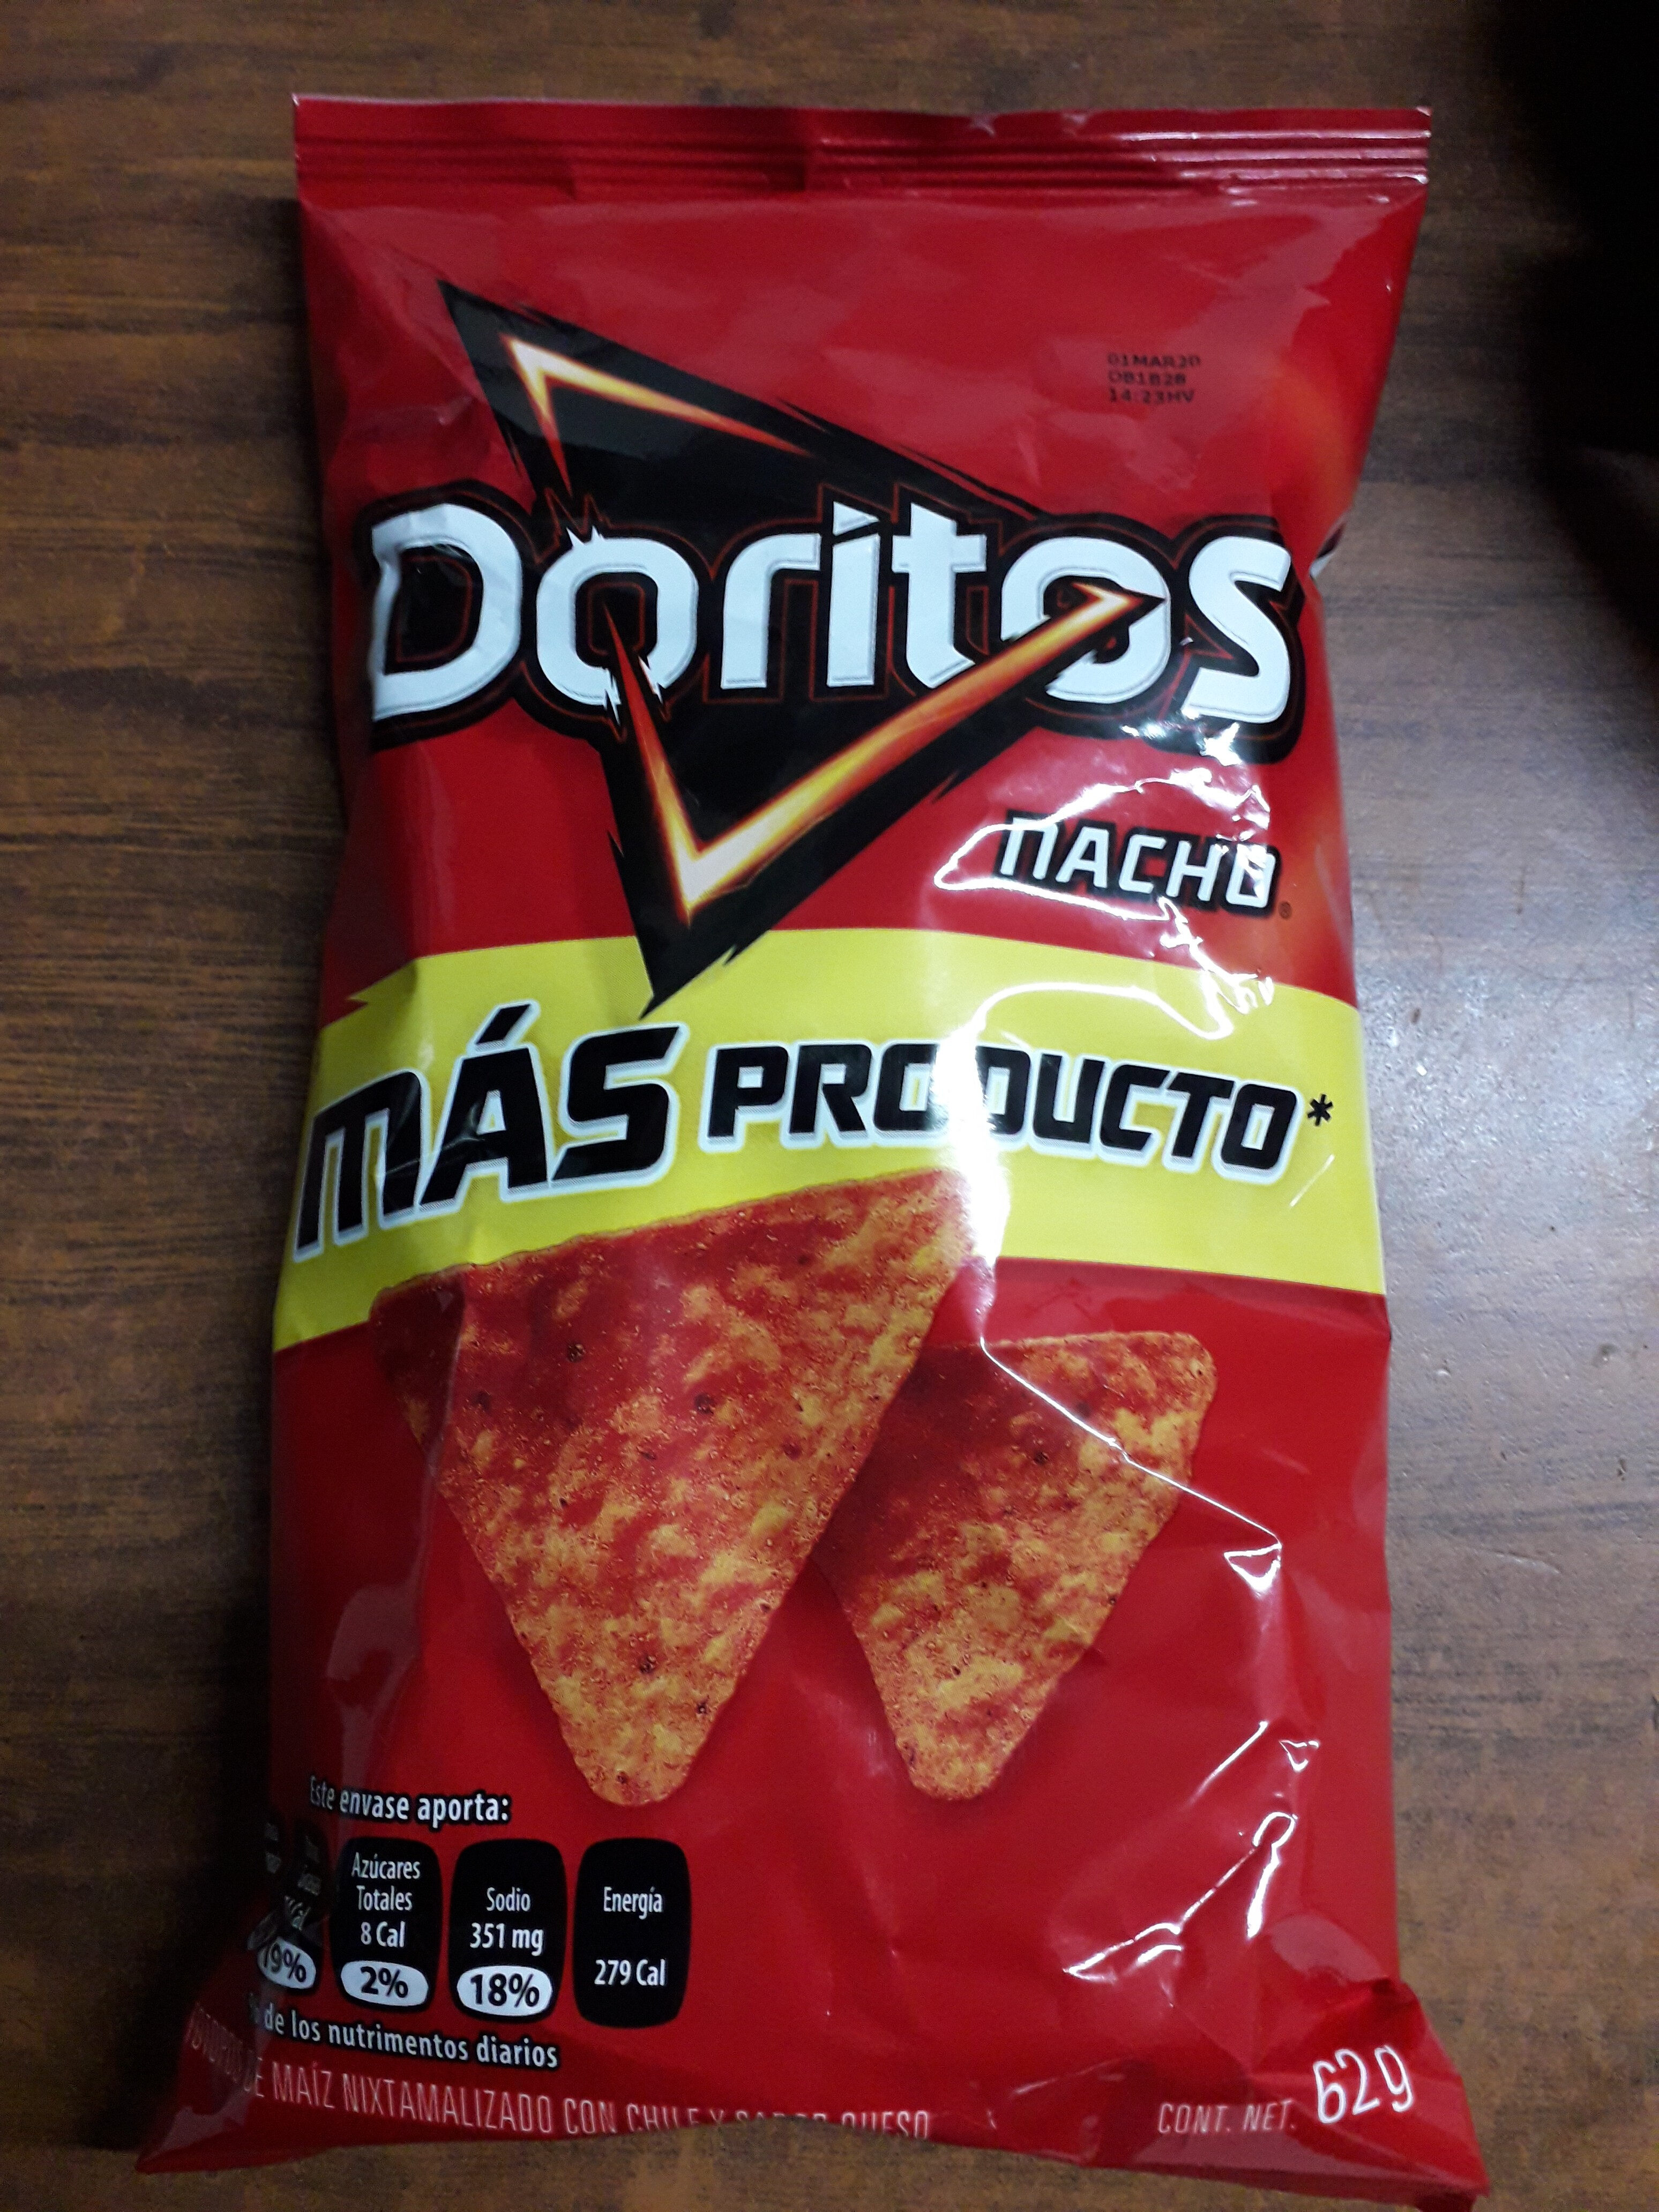 doritos nacho - Product - es